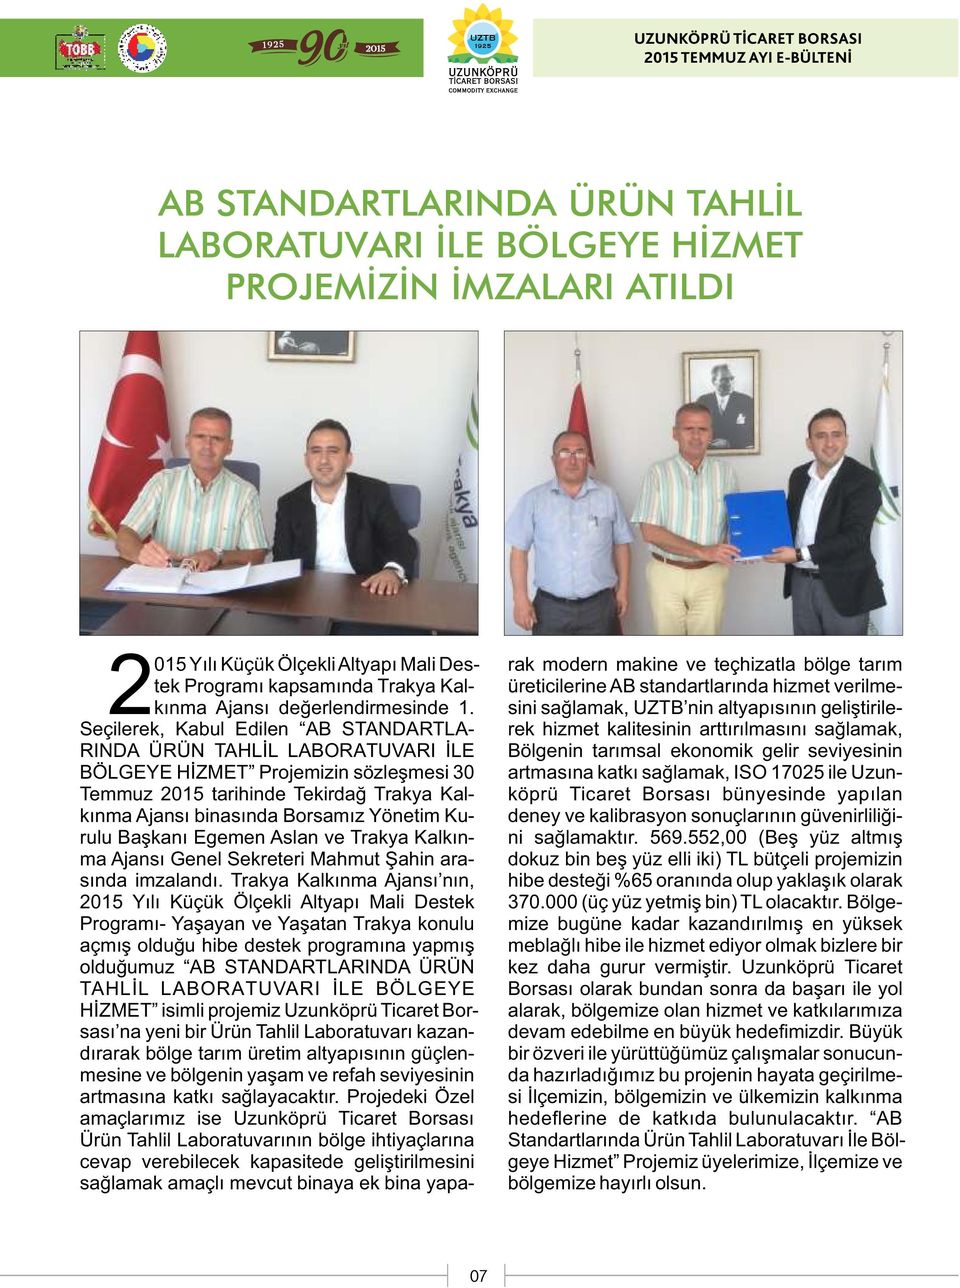 Kurulu Başkanı Egemen Aslan ve Trakya Kalkınma Ajansı Genel Sekreteri Mahmut Şahin arasında imzalandı.